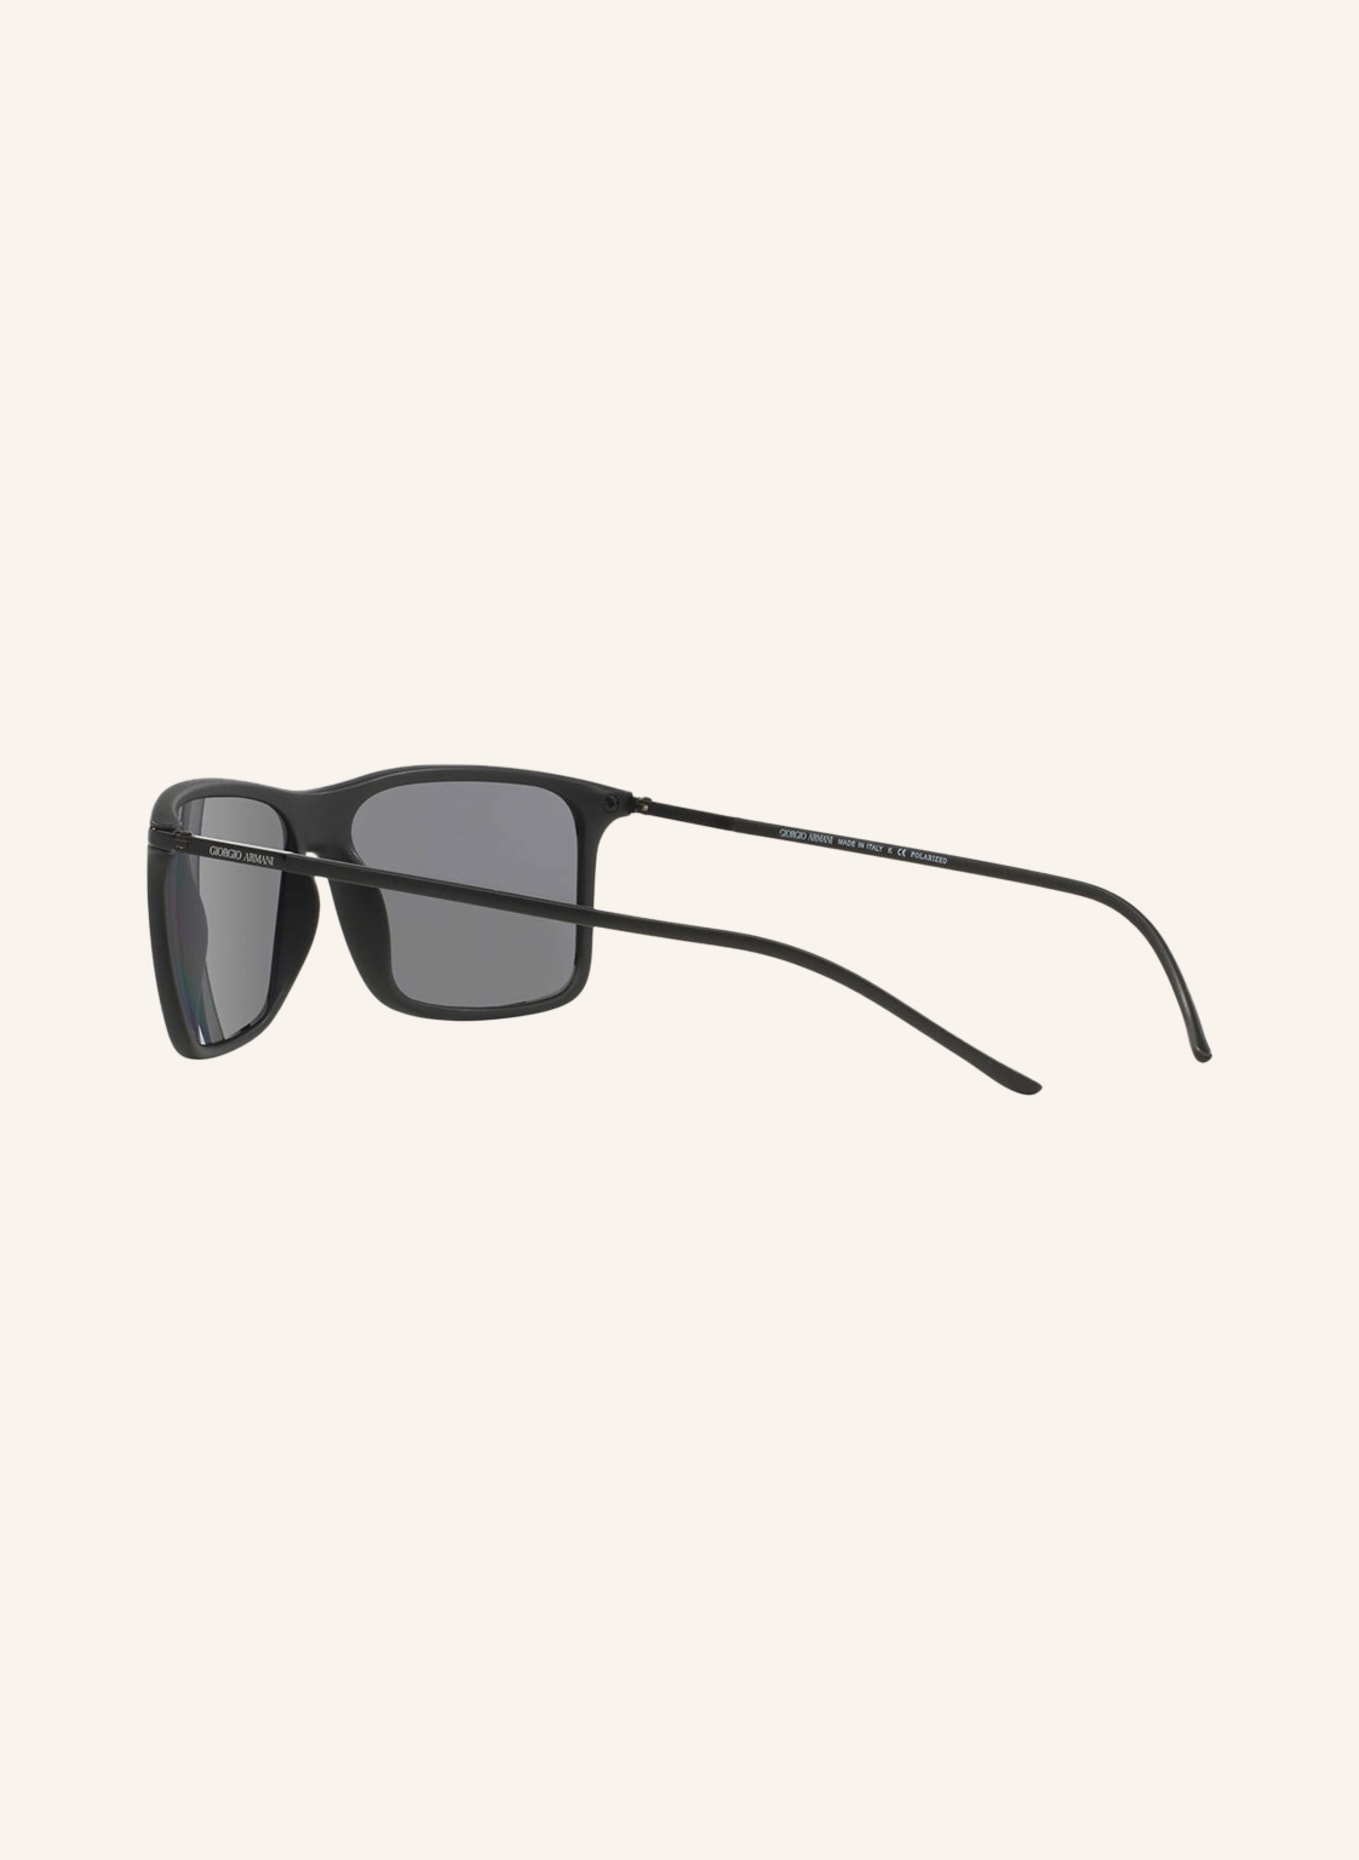 EMPORIO ARMANI Sunglasses AR8034, Color: 504281 - MATTE BLACK/GRAY POLARIZED (Image 4)